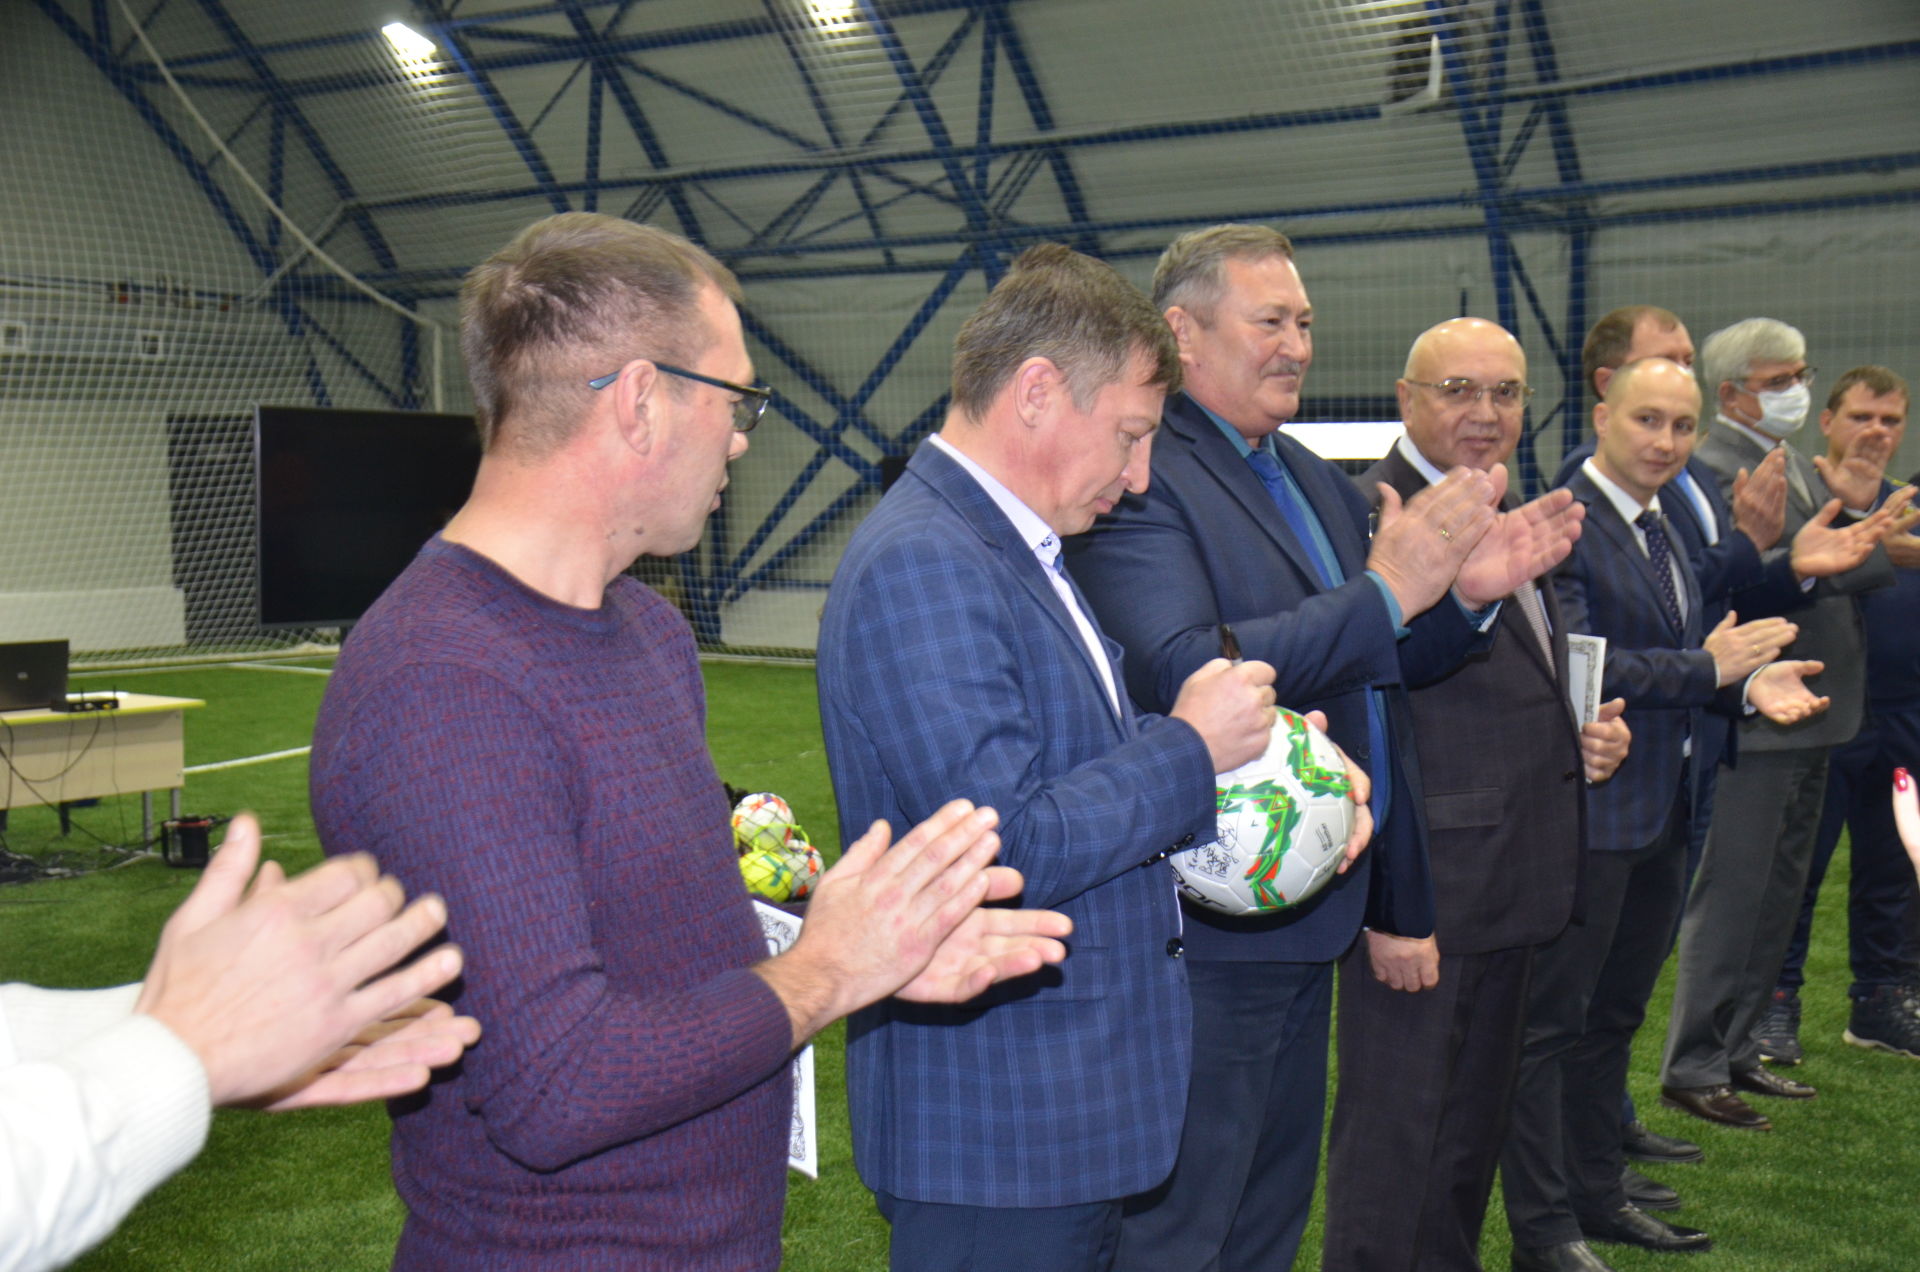 Рөстәм Миңнеханов Әгерҗедә яңа футбол манежын ачты